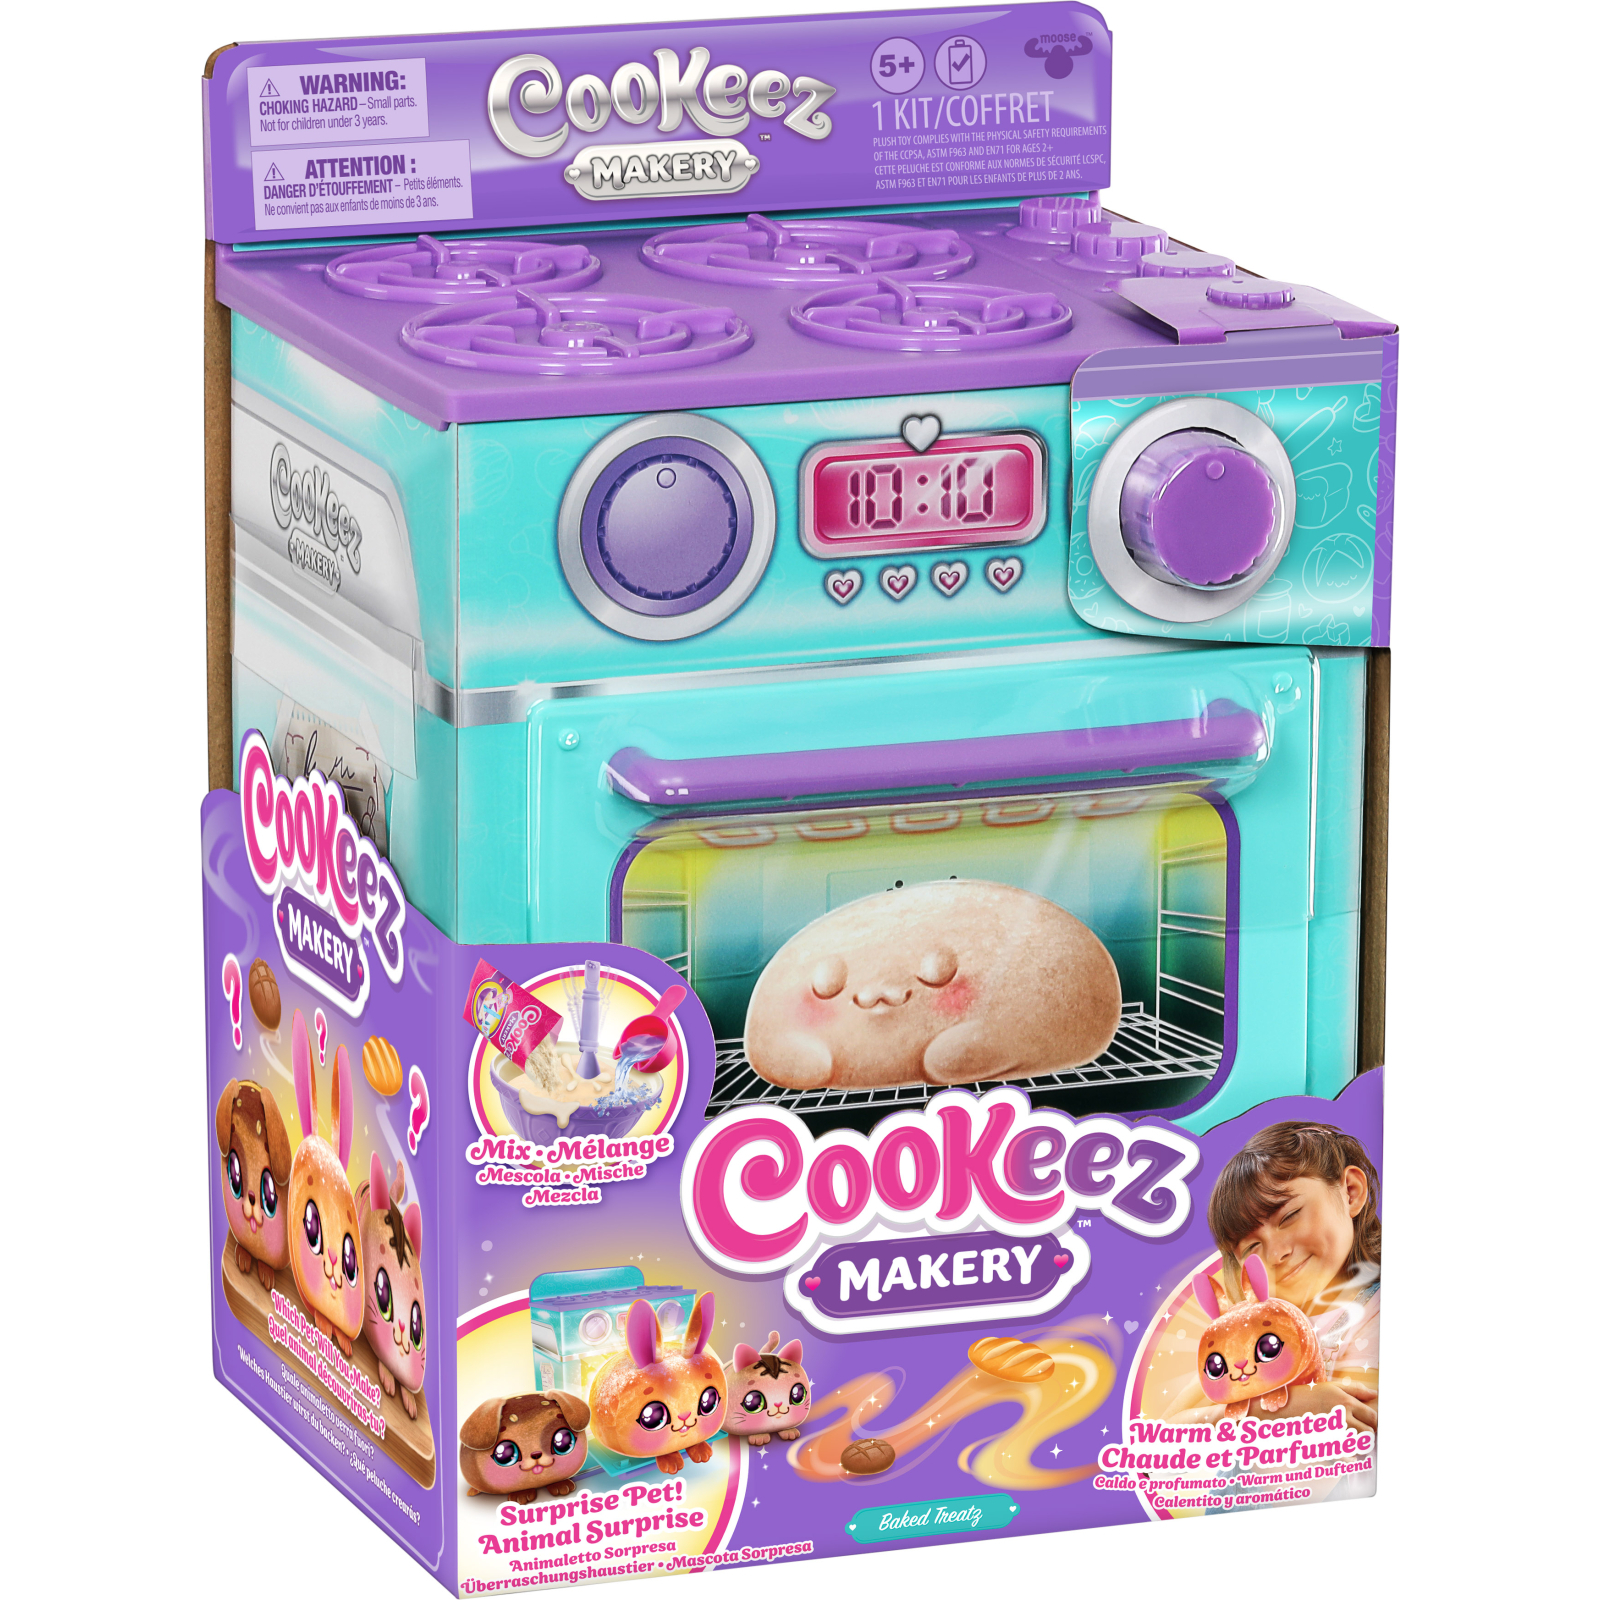 Интерактивная игрушка Moose Cookies Makery Магическая пекарня - Паляница (23501)